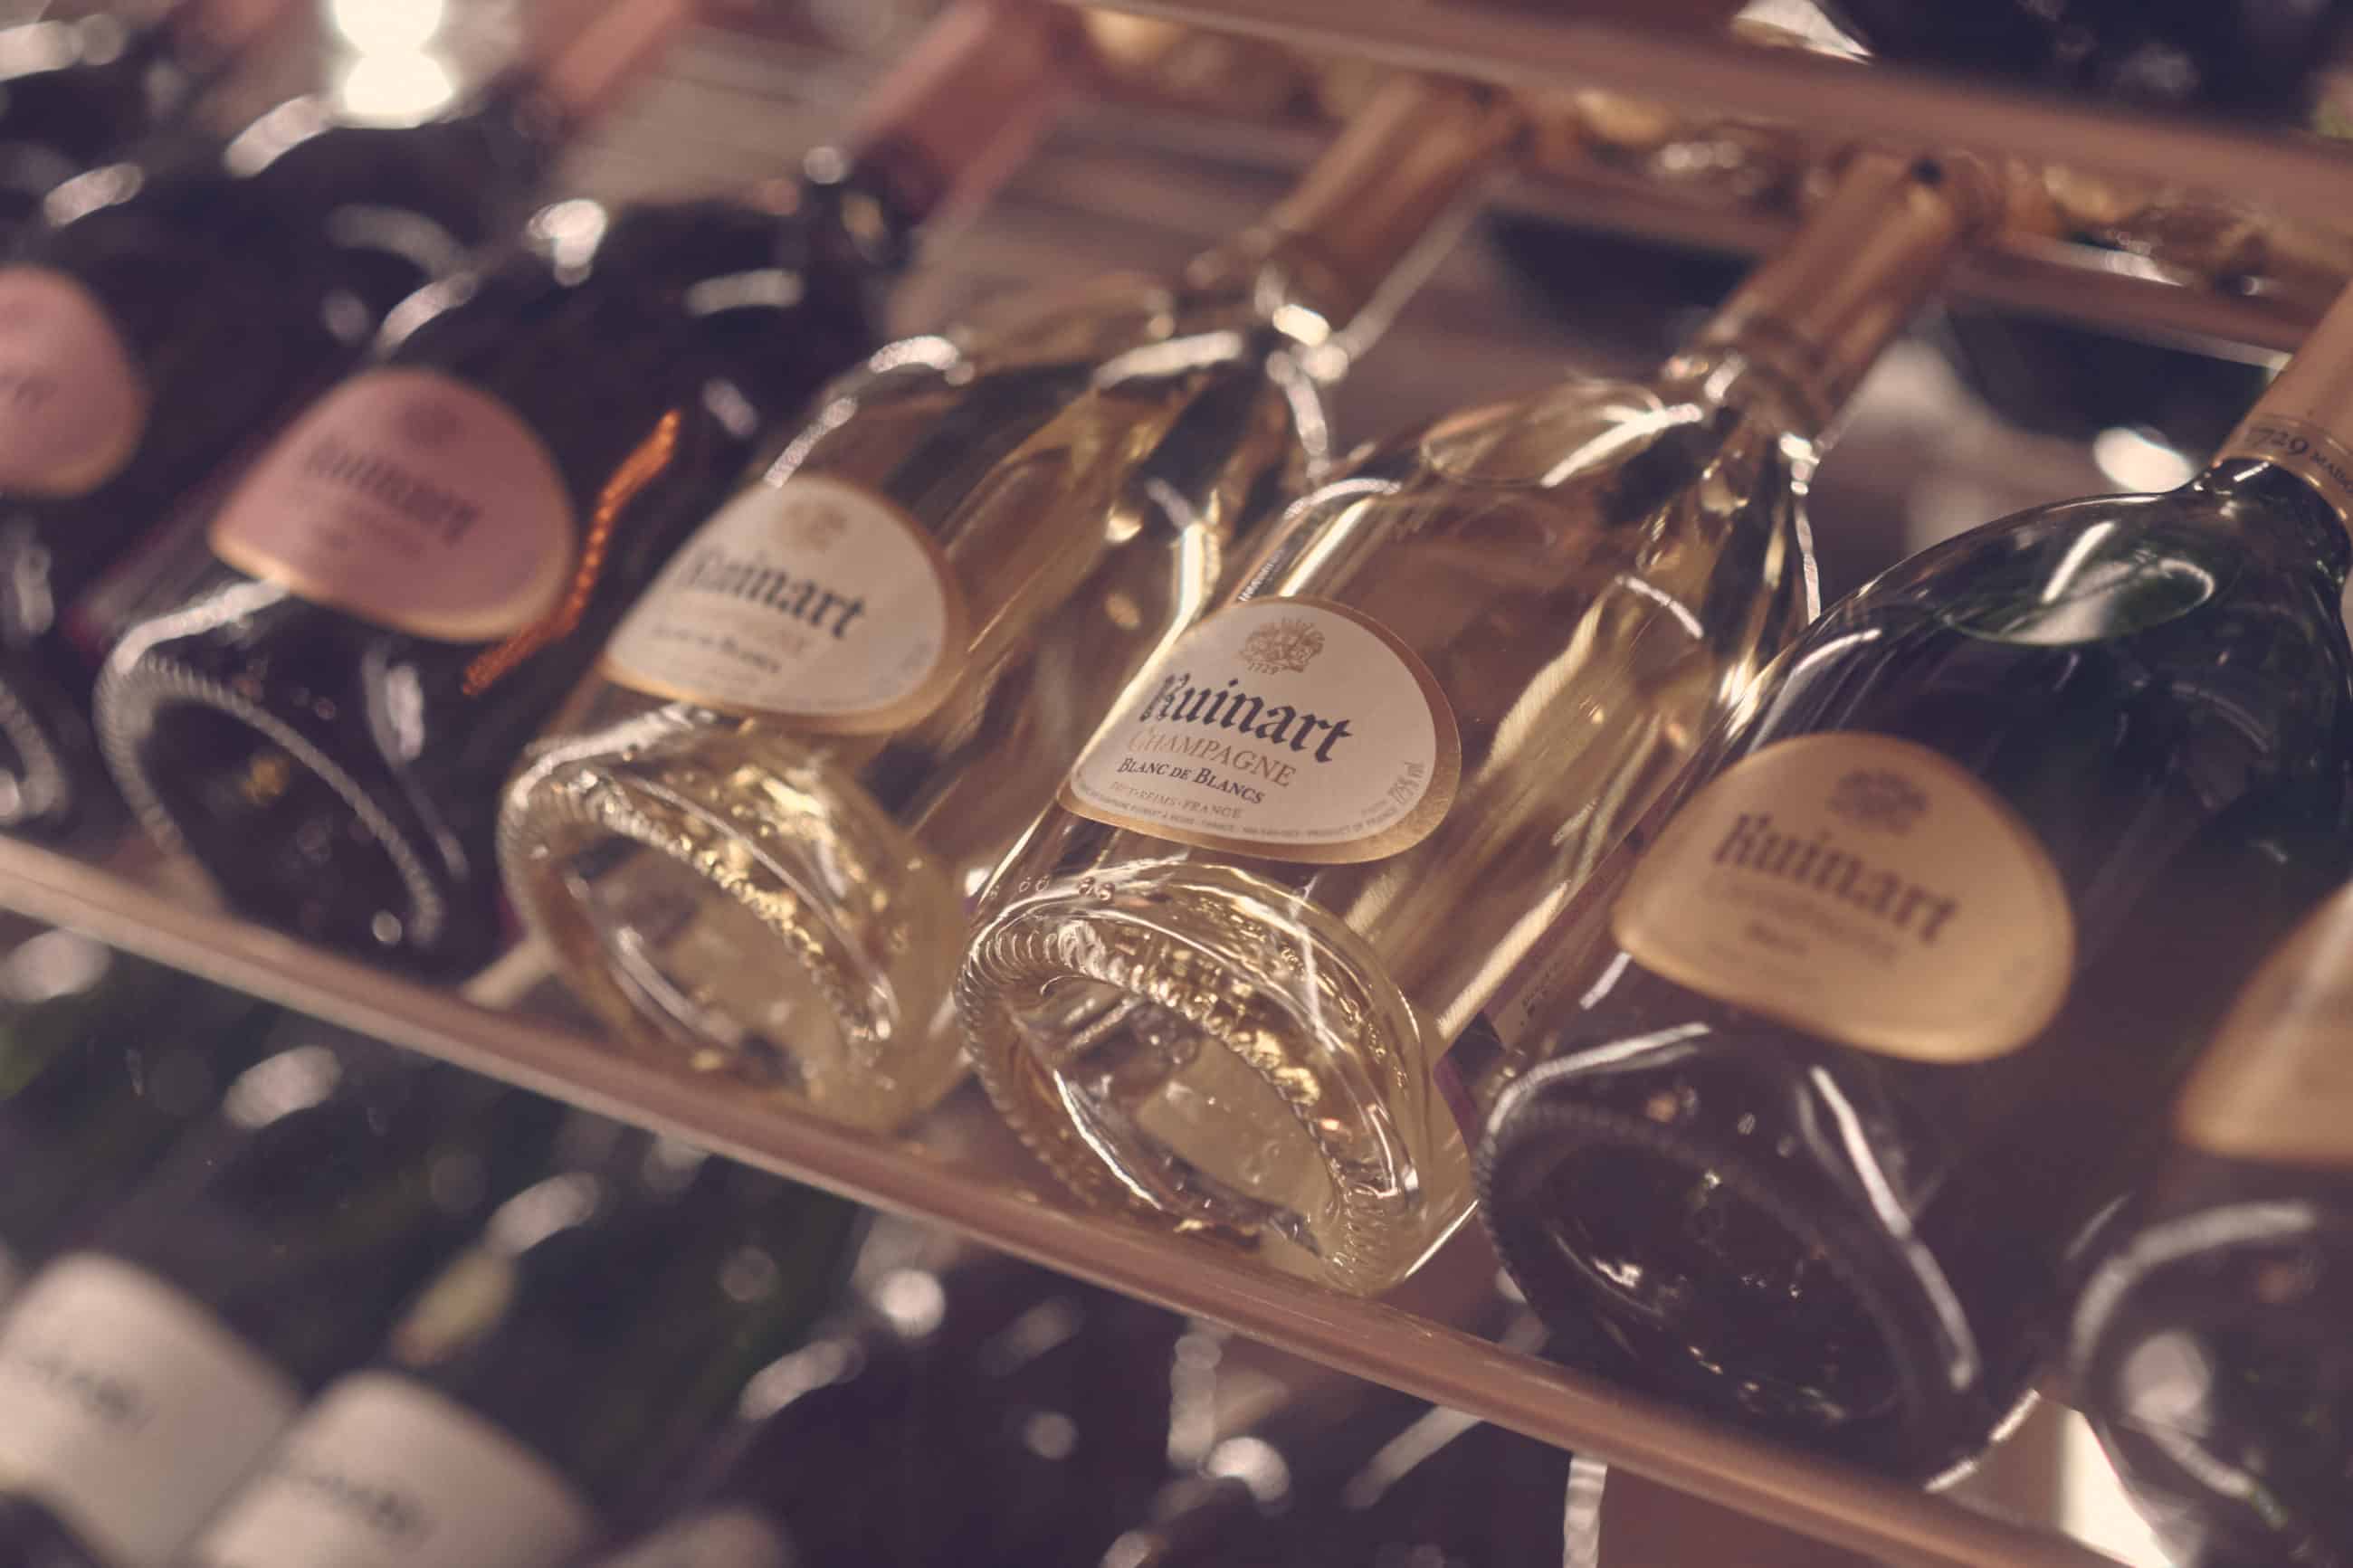 Zuhanásból szárnyalás - A Champagne házak elmúlt három éve döbbenetes változásokat hozott